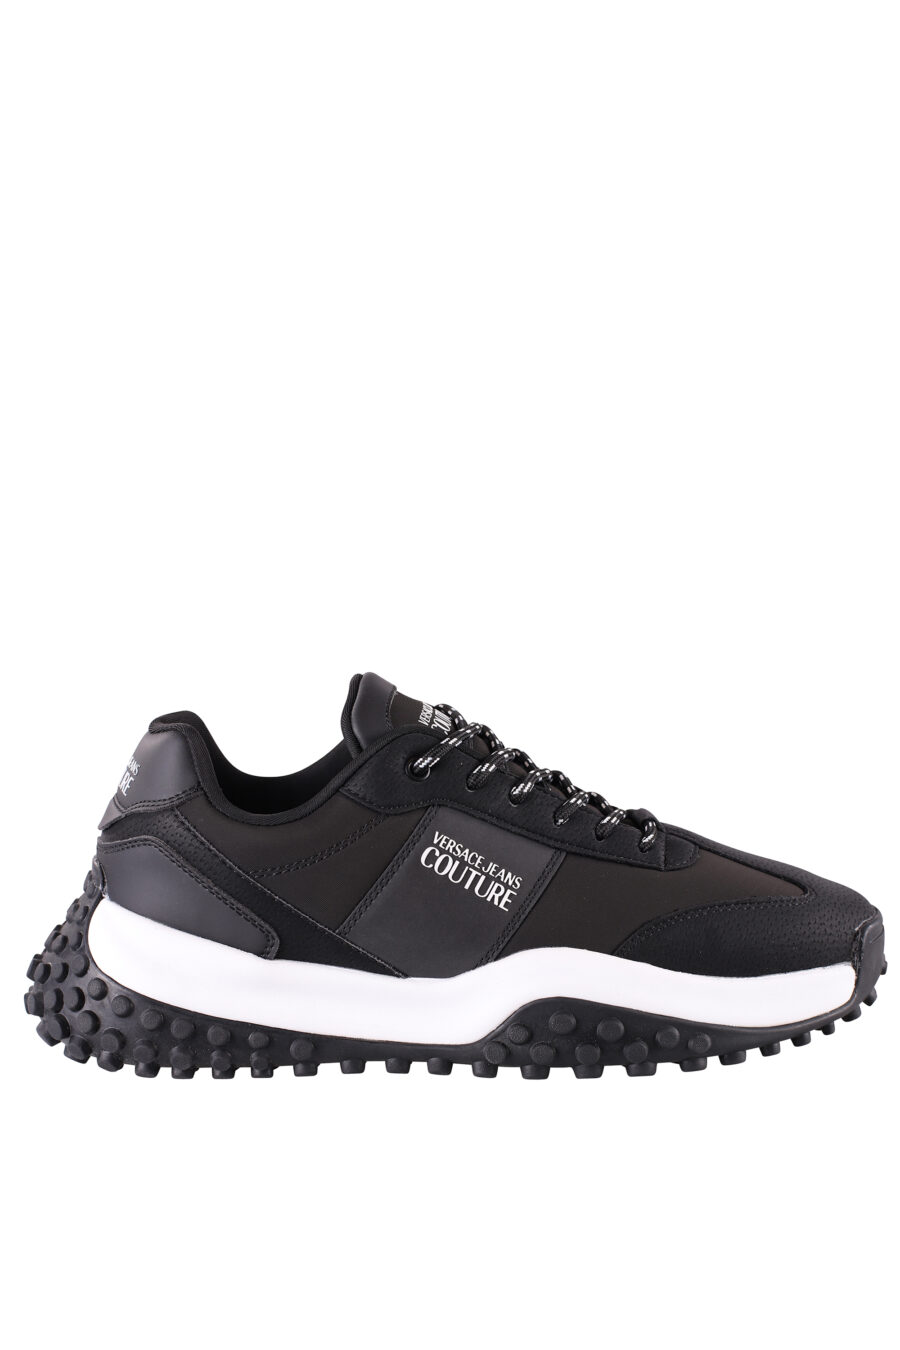 Zapatillas negras con minilogo blanco y suela bicolor - IMG 8487